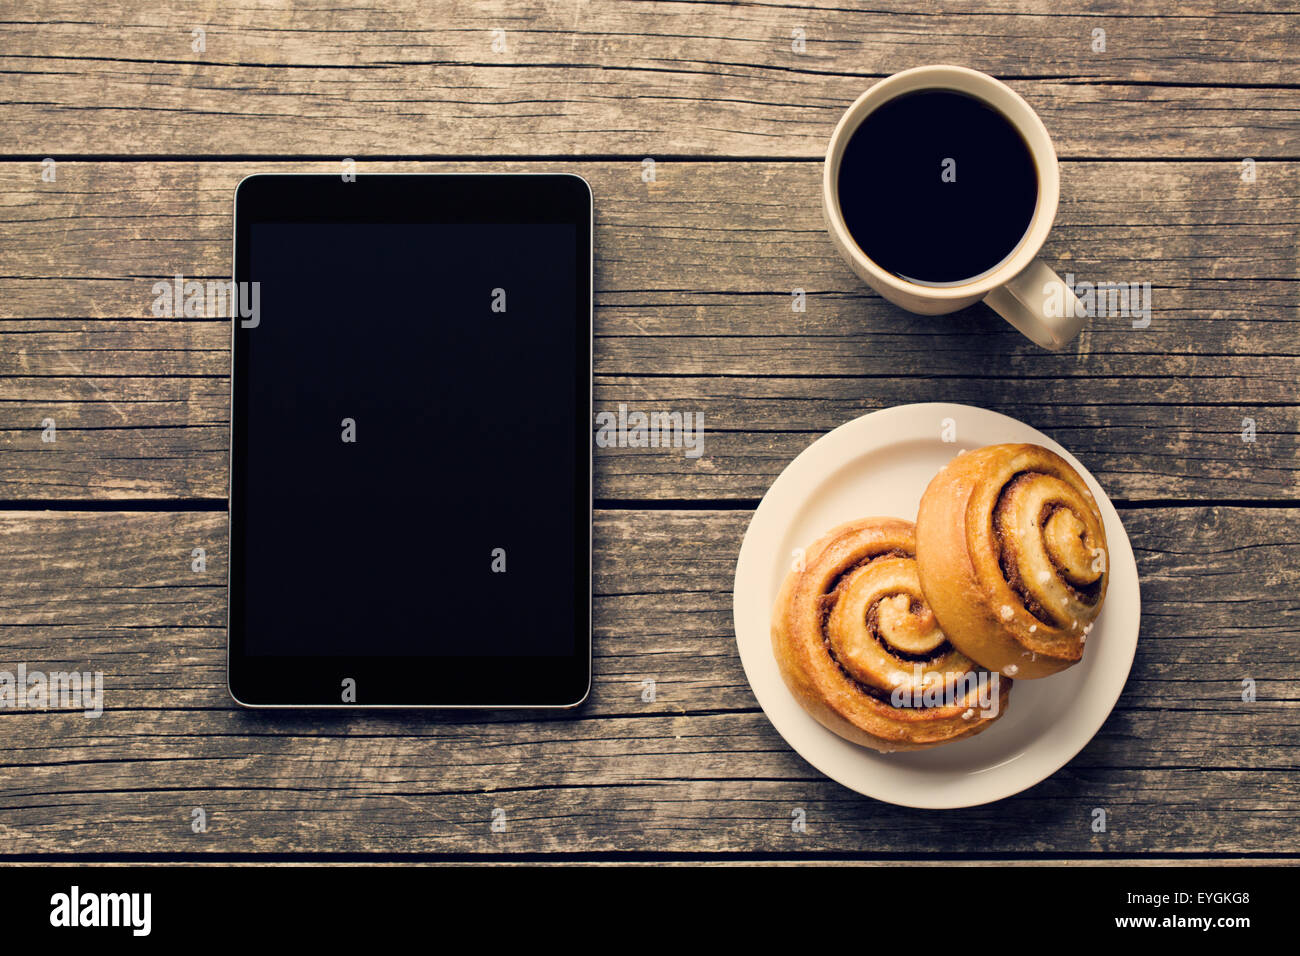 La cannelle, tasse de café et l'ordinateur tablette. Petit-déjeuner d'affaires. Banque D'Images